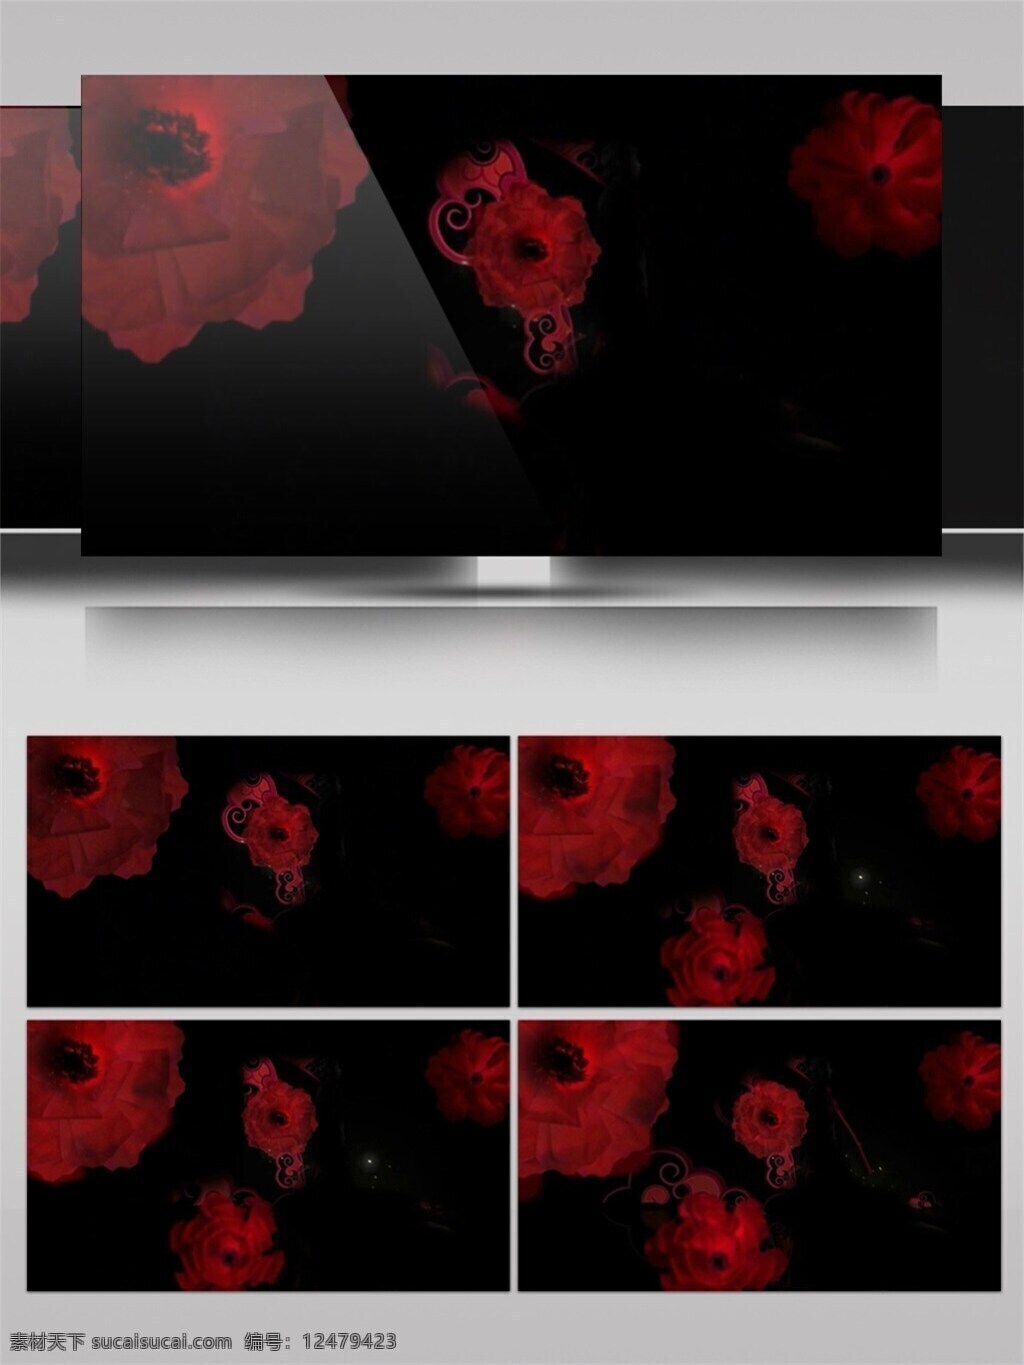 暗红 花瓣 高清 视频 3d视频素材 暗红花瓣 电脑屏幕保护 高清视频素材 光斑散射 视觉享受 手机壁纸 特效视频素材 唯美光花 炫酷华丽